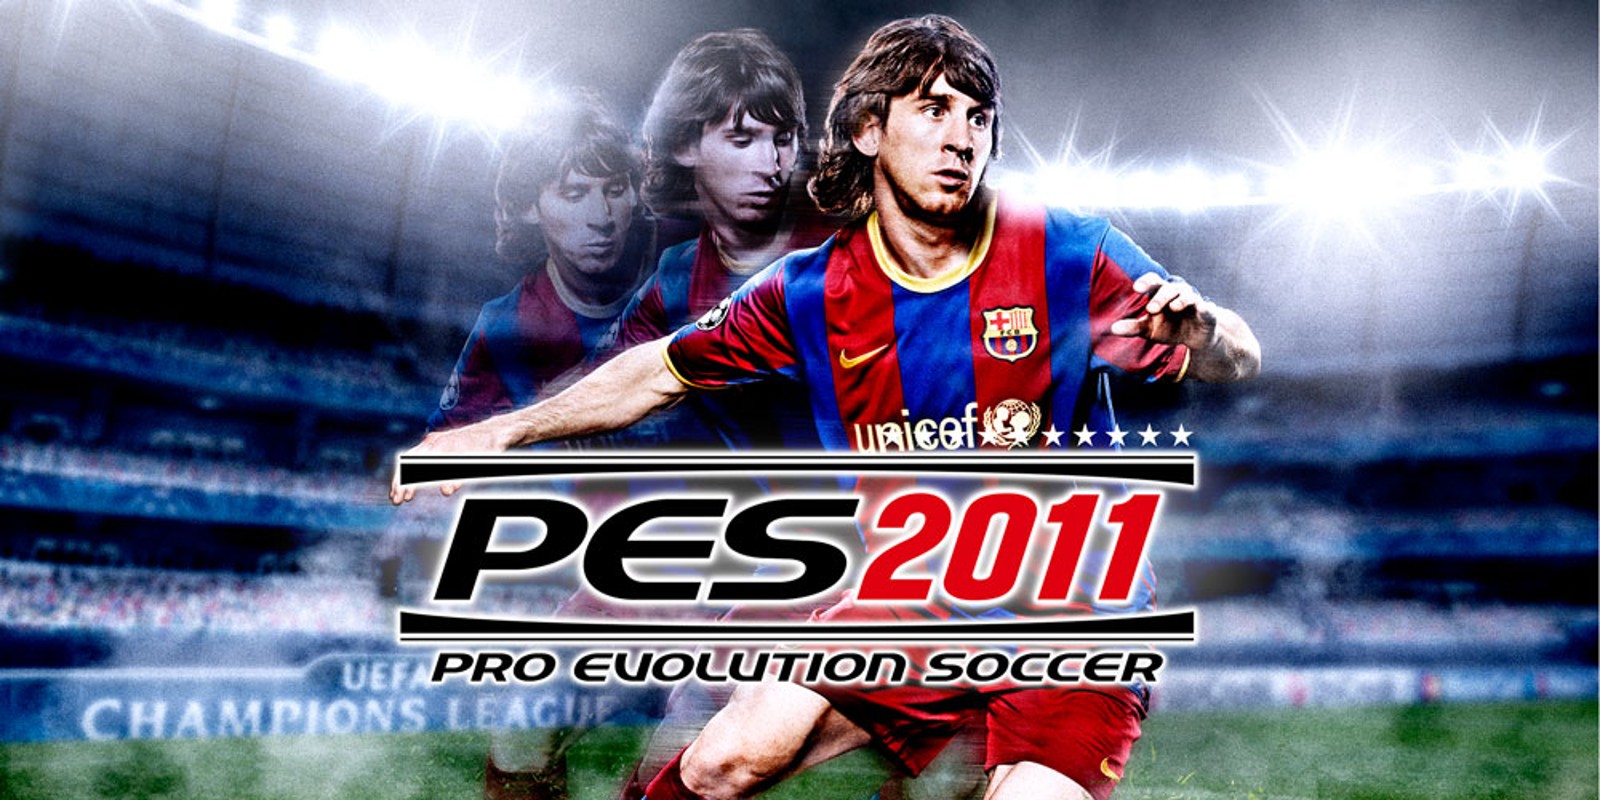 PES 2011 Free Download PC (Full Version)